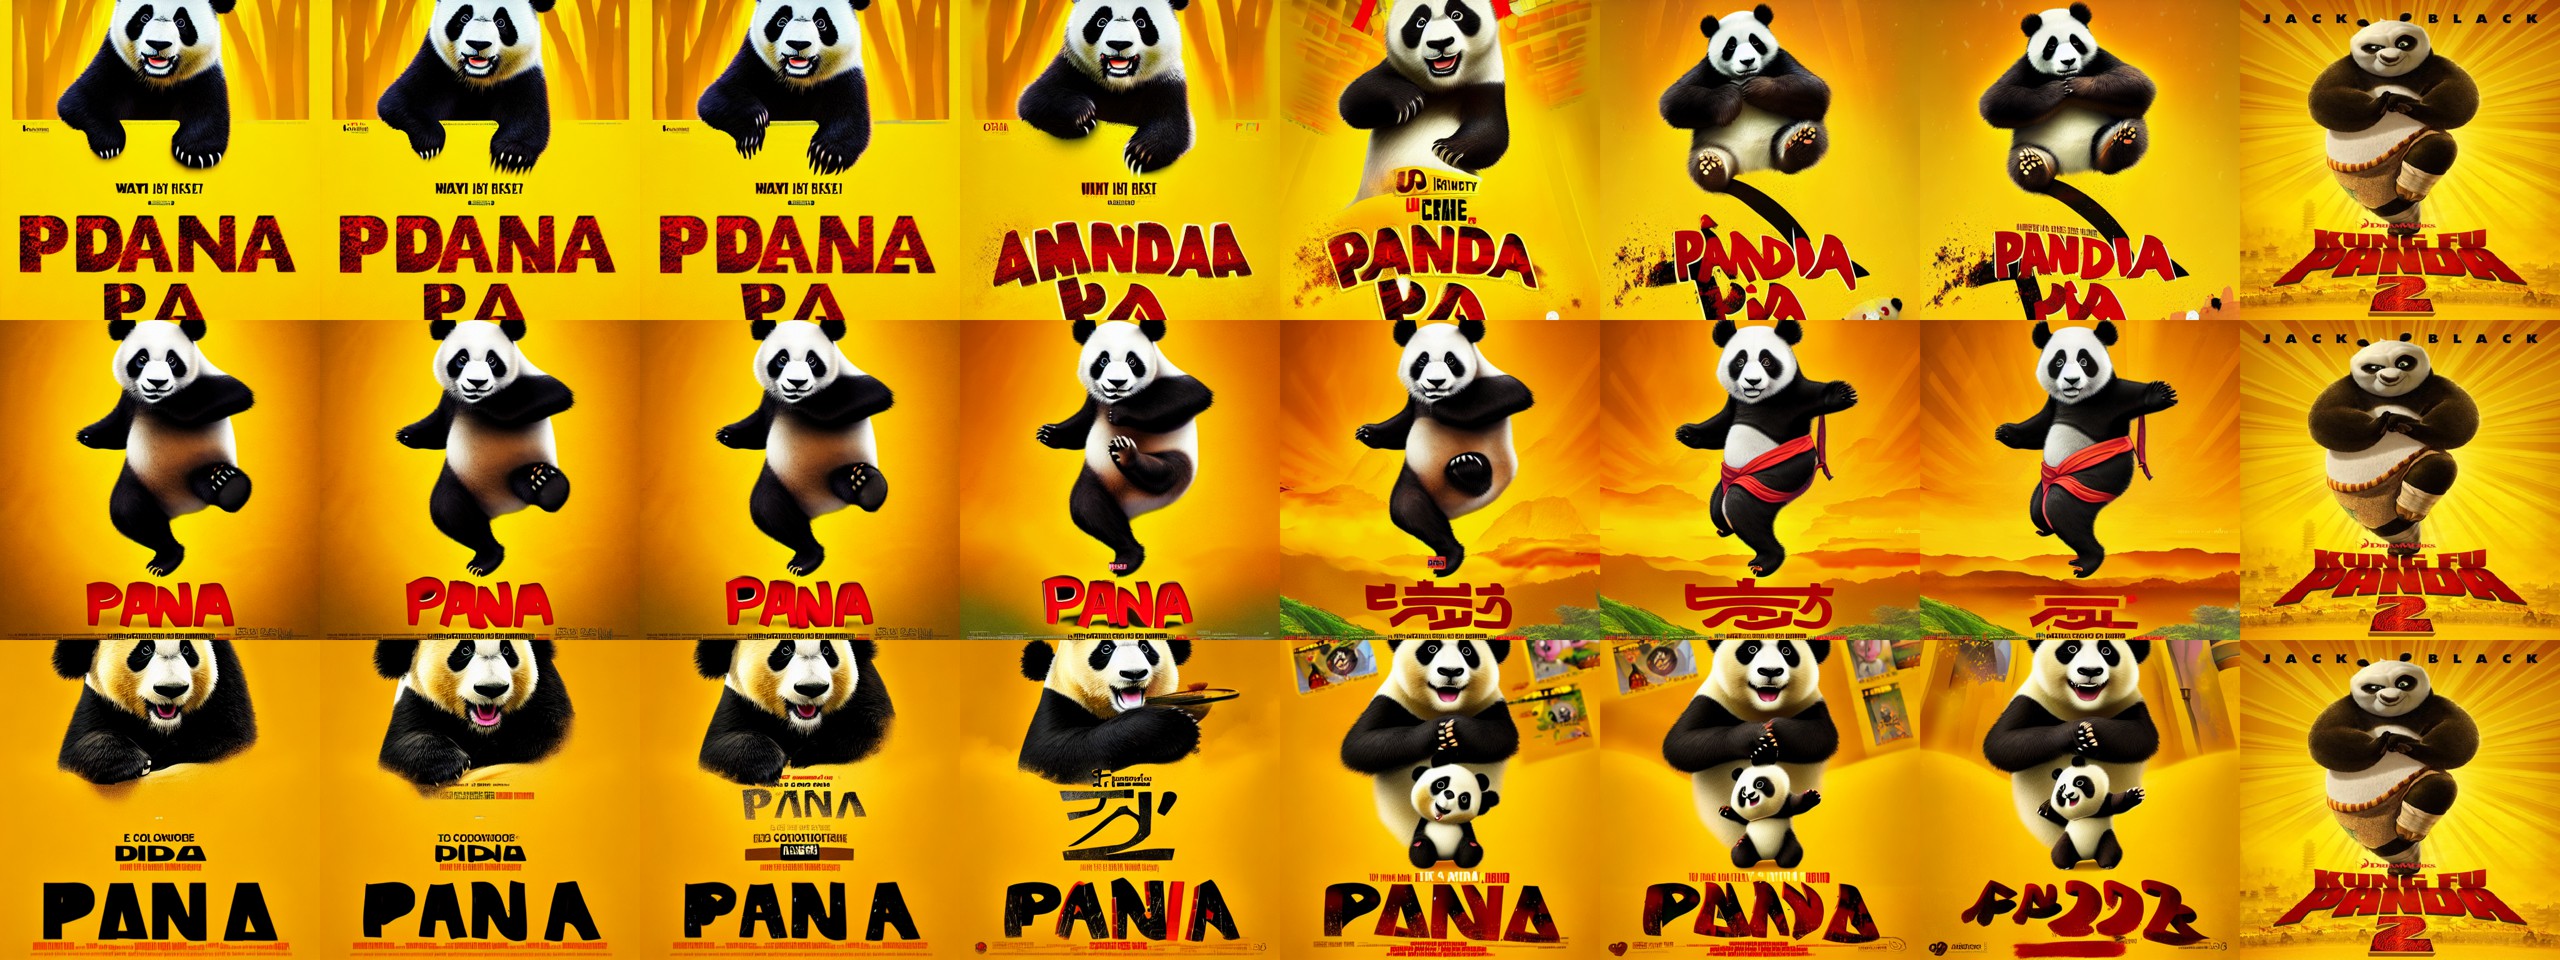 img2img_panda_movie_poster_with_yellow_b_kungfu_panda